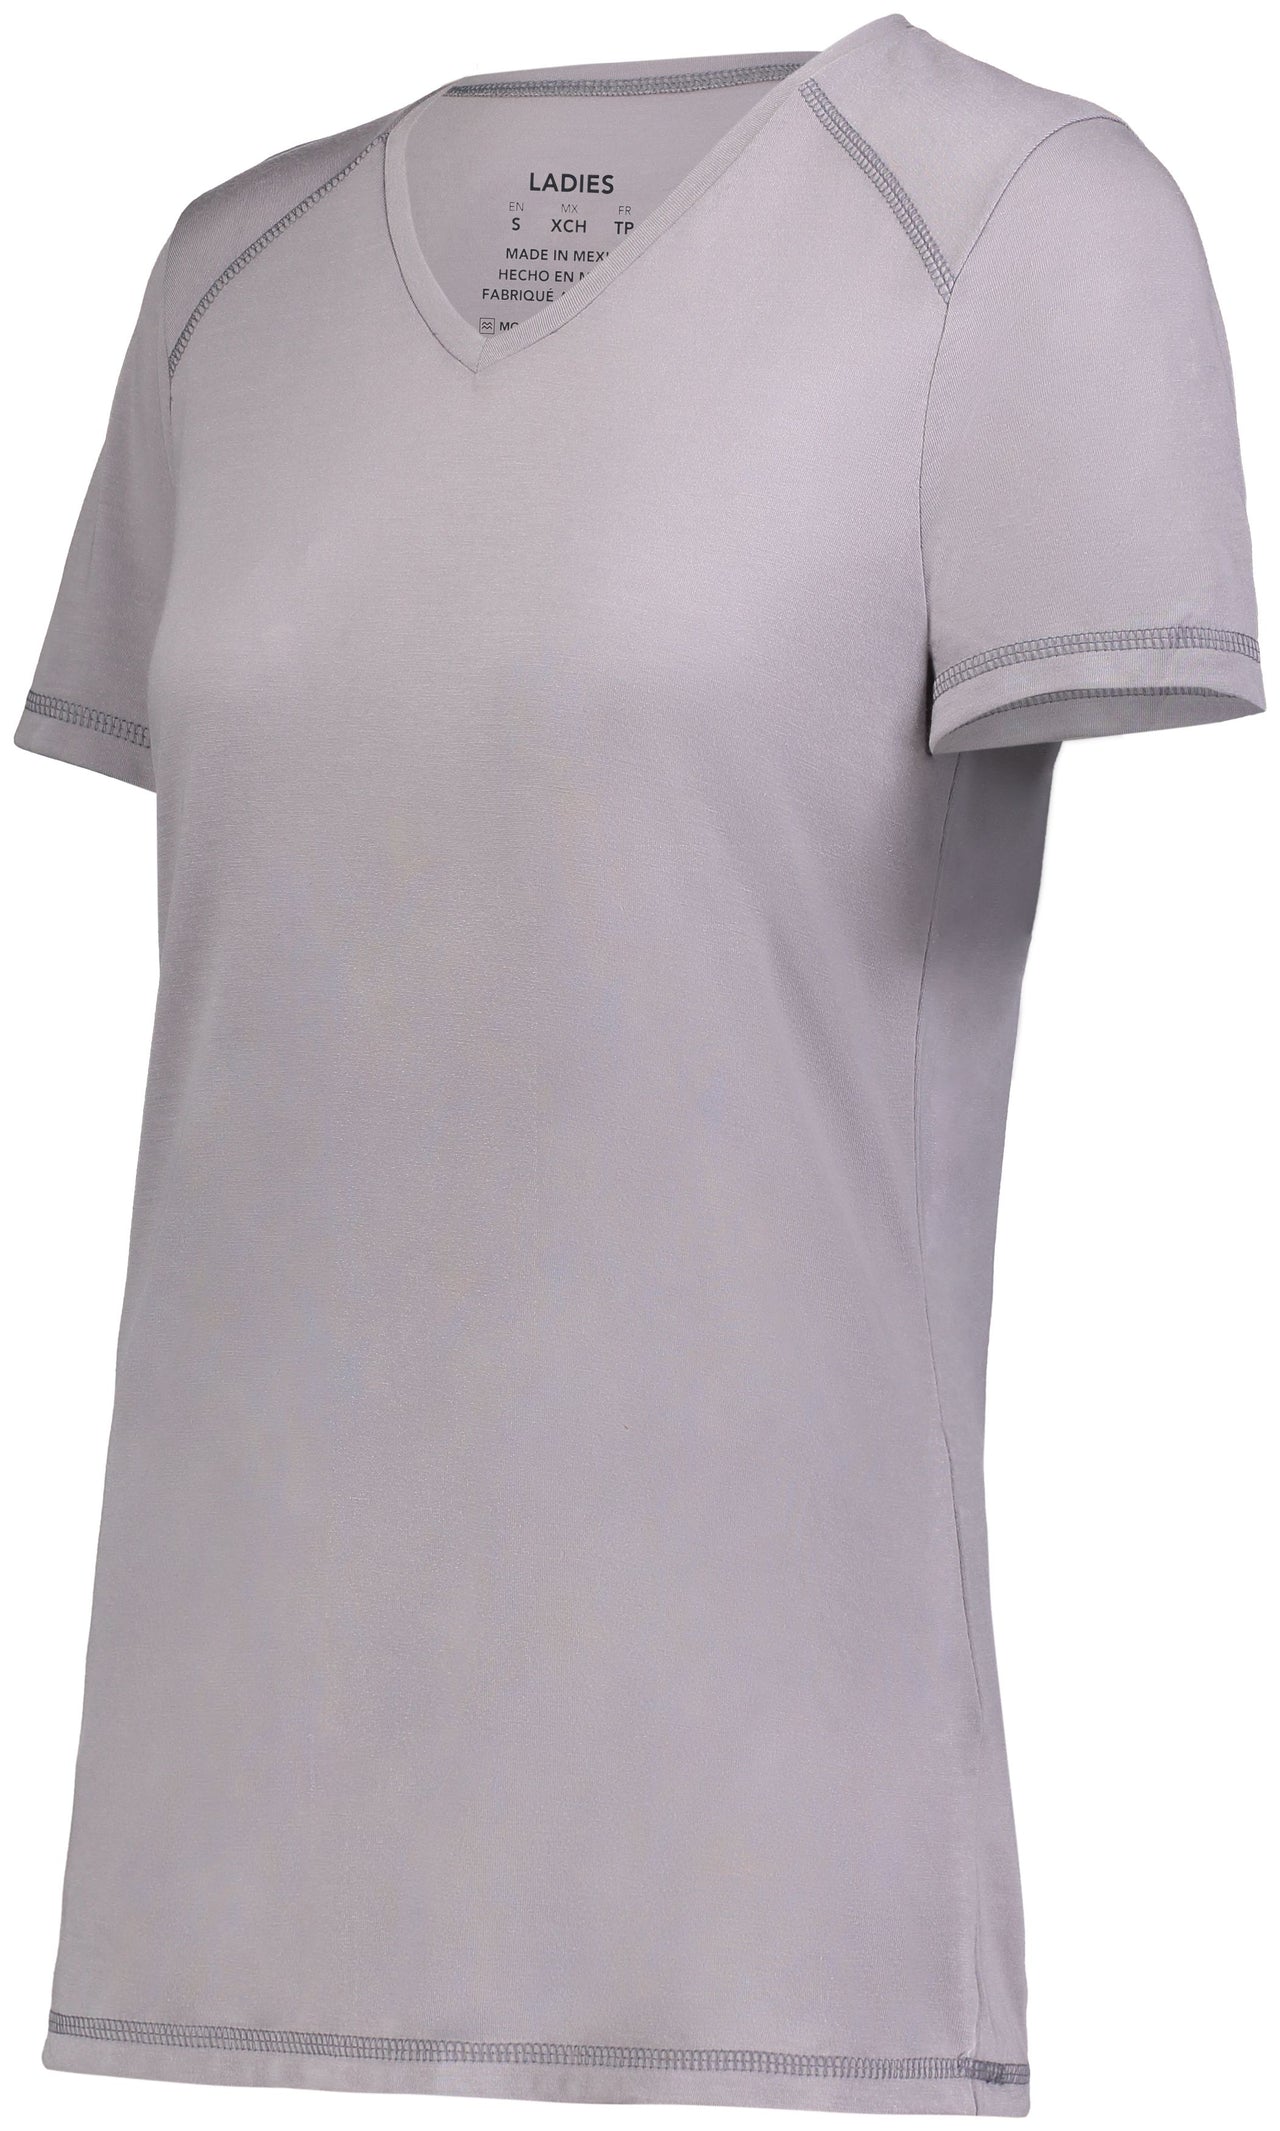 T-shirt en polyester super doux pour femmes - 6844